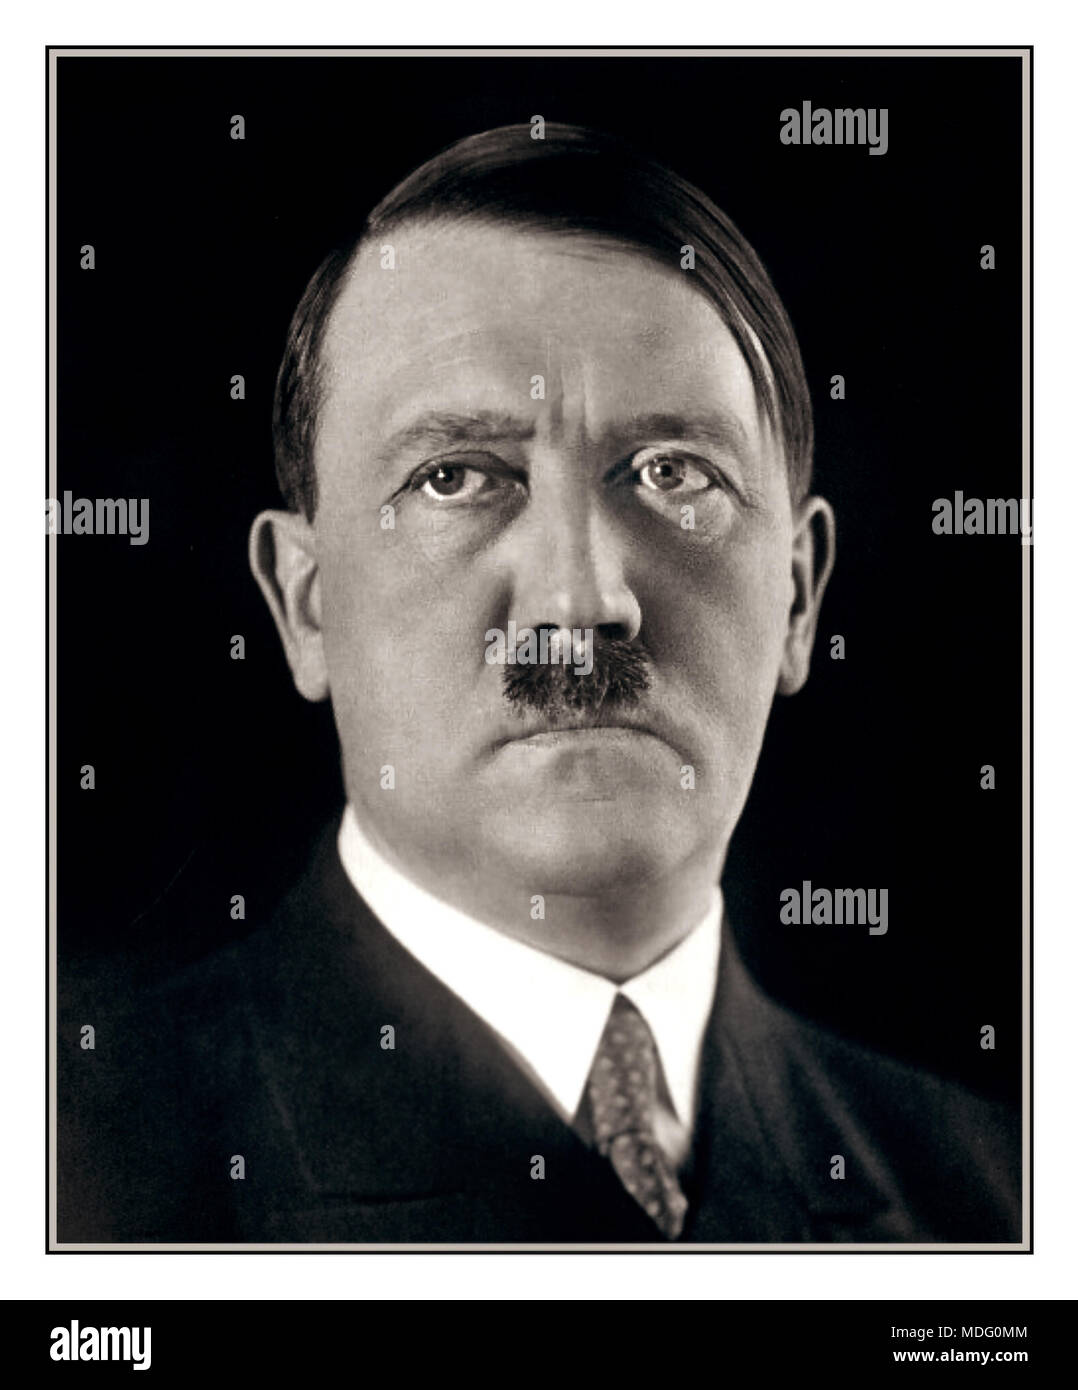 1920's ritratto formale di Adolf Hitler che colpisce una posa per il suo fotografo Heinrich Hoffmann. 1925. Dopo aver visto le fotografie, apparentemente Hitler ordinò Hoffmann per distruggere i negativi, ma ha disubbidito. Foto Stock